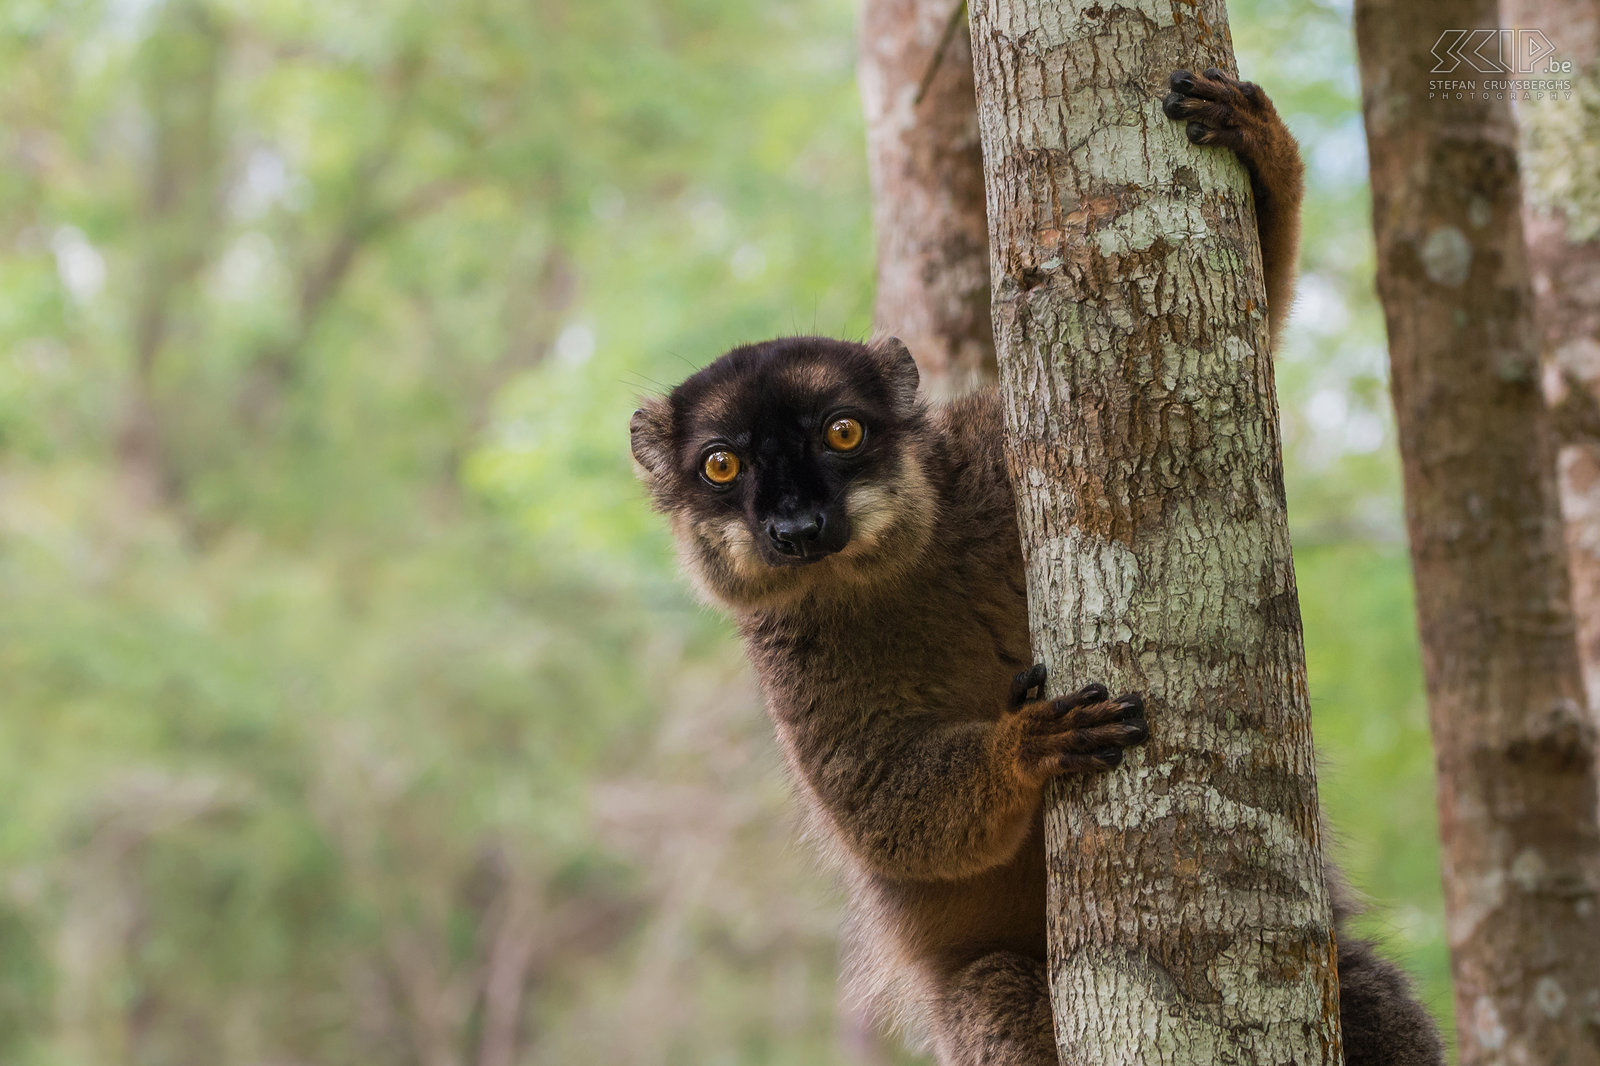 Andasibe - Bruine maki De lemuren (Lemuriformes) of maki's zijn een infraorde van de primaten en ze zijn endemisch op Madagaskar. Er zijn 86 soorten met heel wat onderverdelingen. De bruine maki’s (Common brown lemur, Eulemur fulvus) zijn er een van en ze zijn altijd heel schattig en nieuwsgierig. Het dieet van de bruine maki's bestaat voornamelijk uit fruit, jonge bladeren, bloemen en soms ongewervelden. Zij leven meestal in groepen van 5 tot 12 maki's. Stefan Cruysberghs